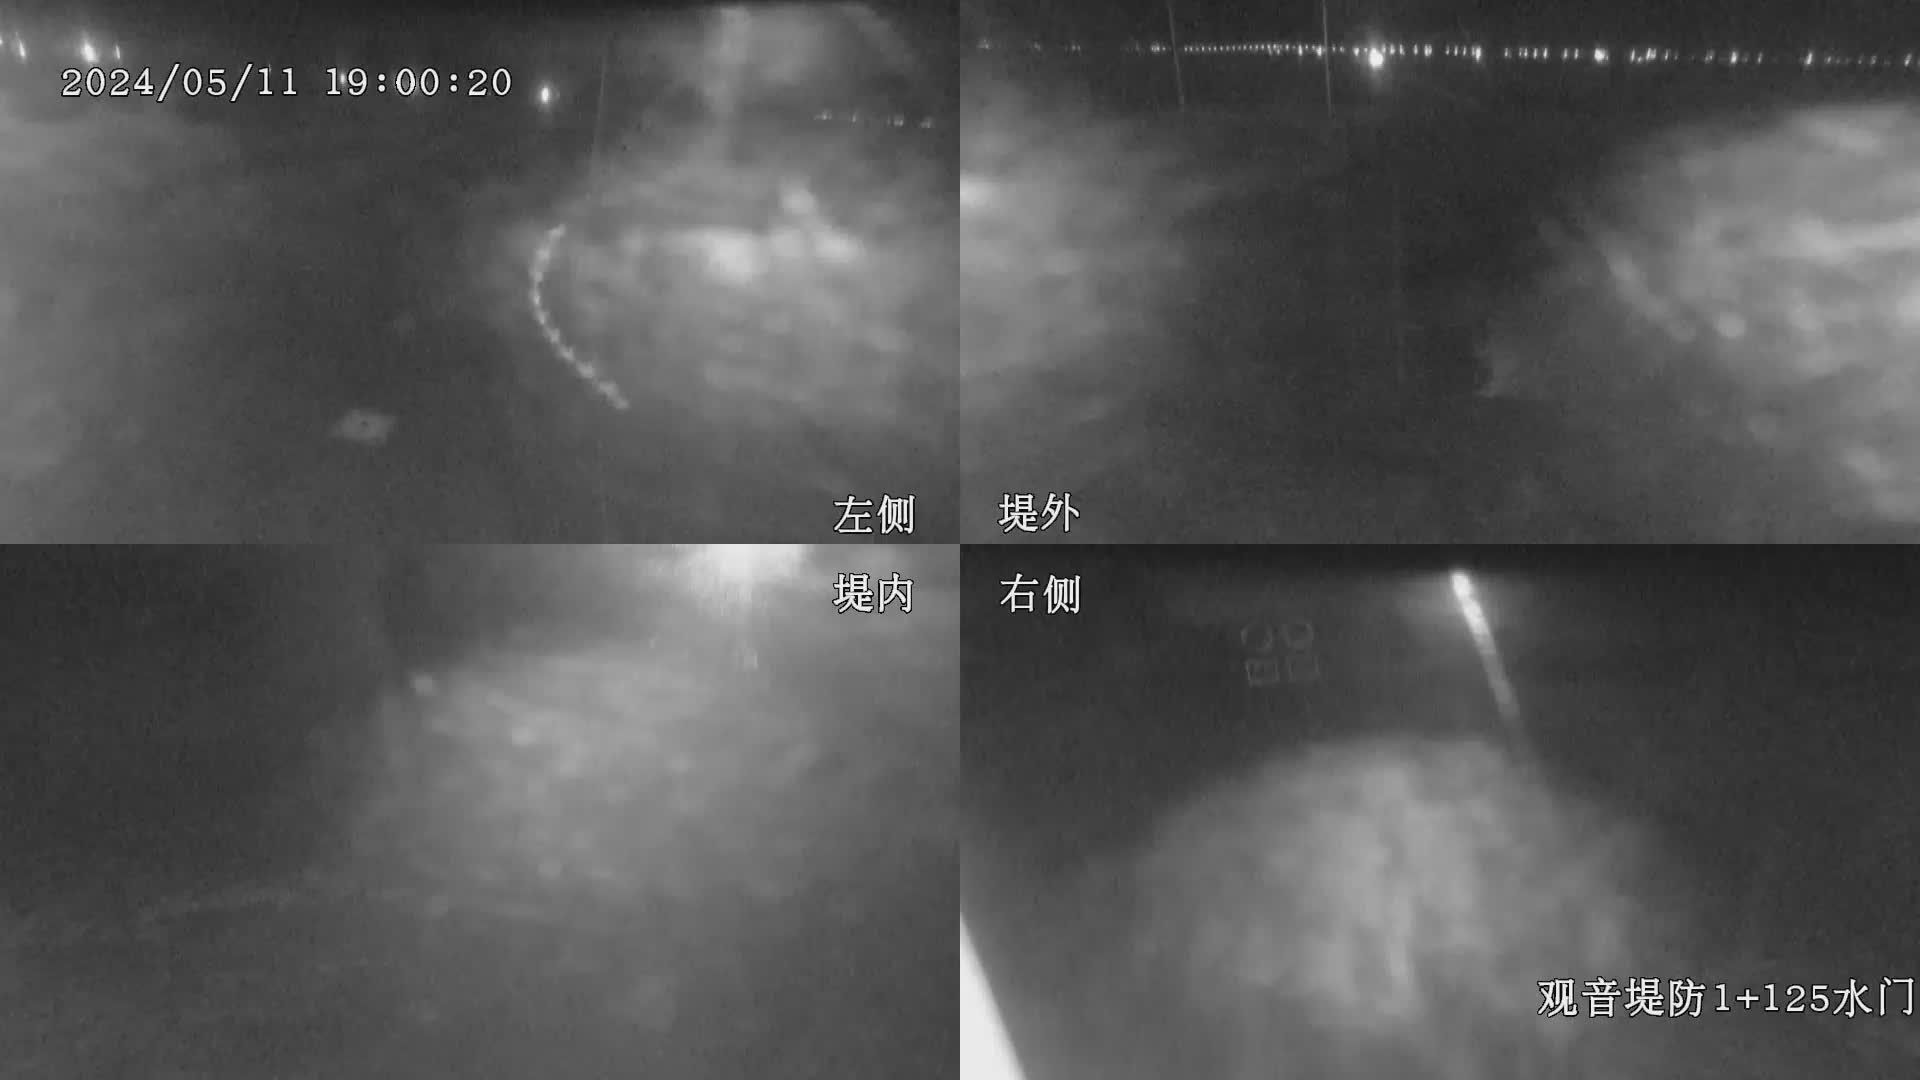 九河局 觀音堤防1+125水門 全景攝影機 氣溫16.4度